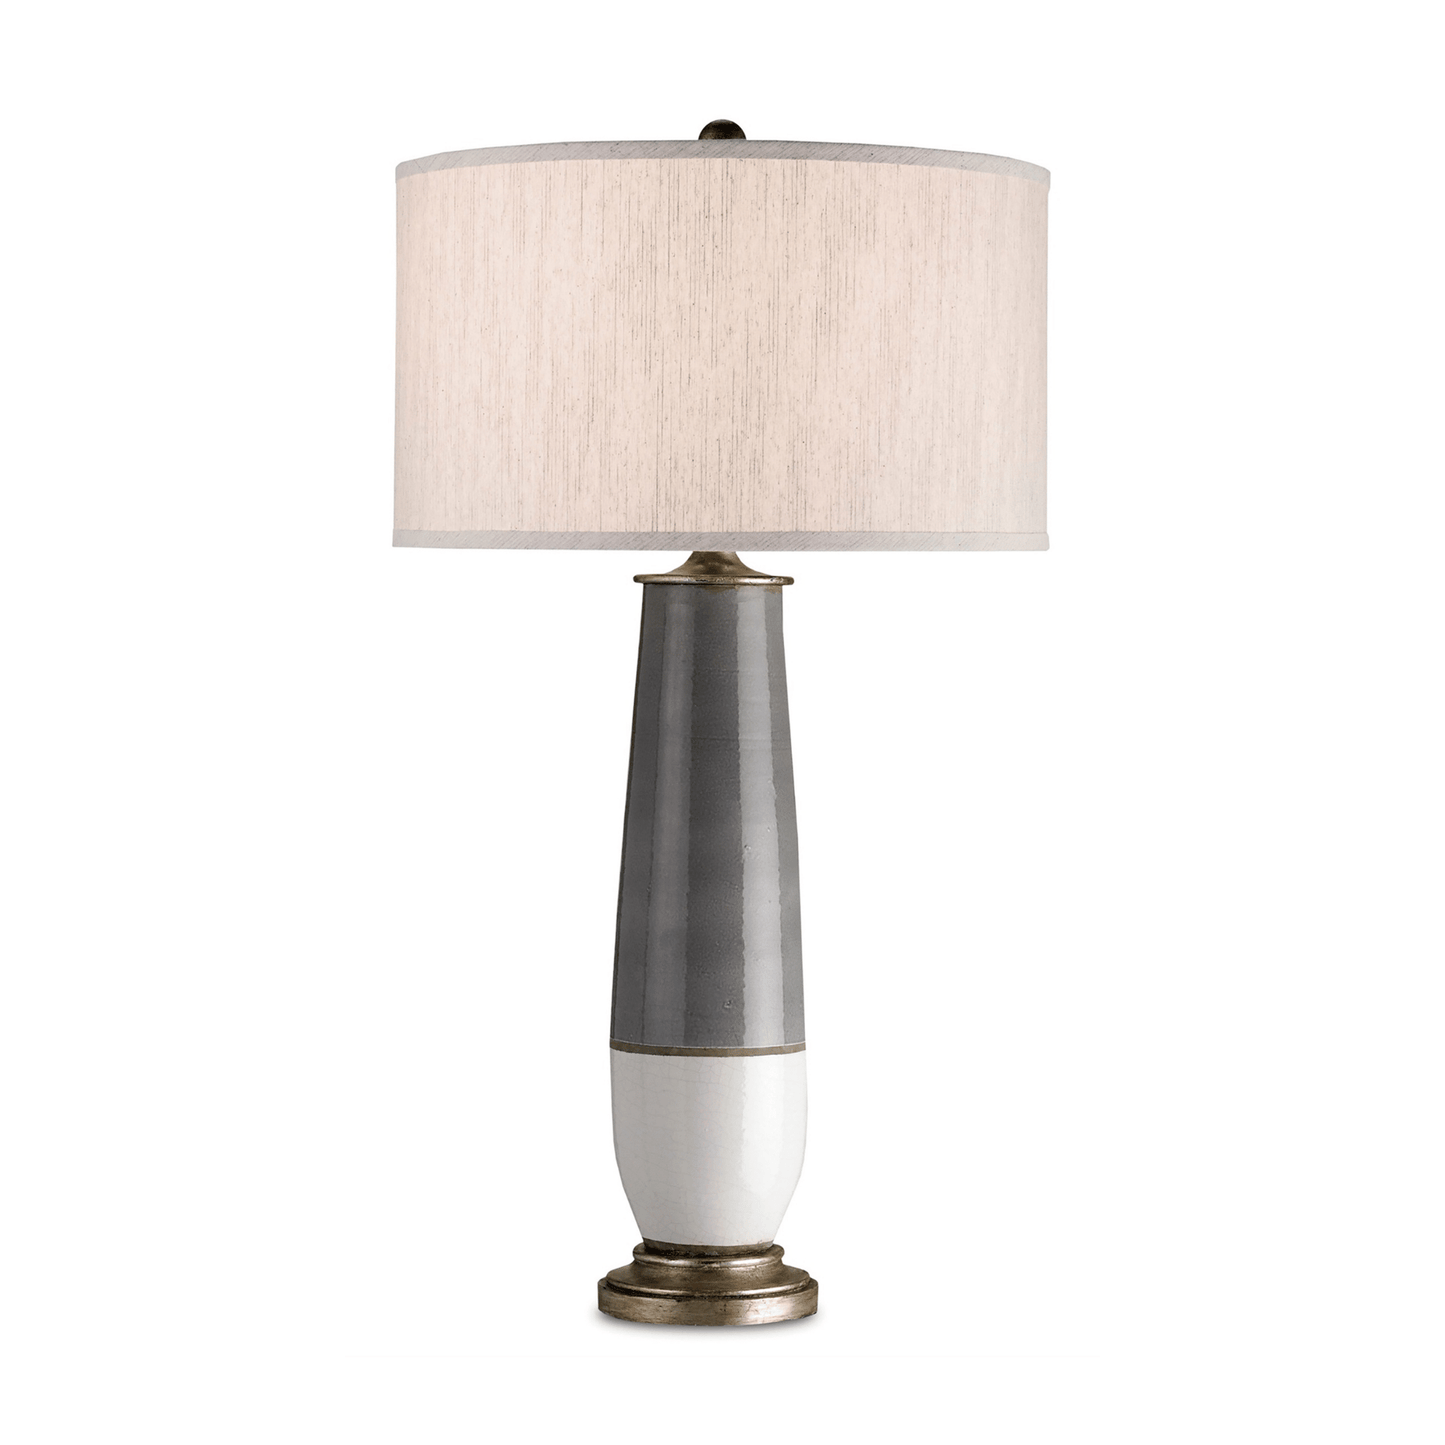 Urbino Table Lamp H: 35" Dia: 19"